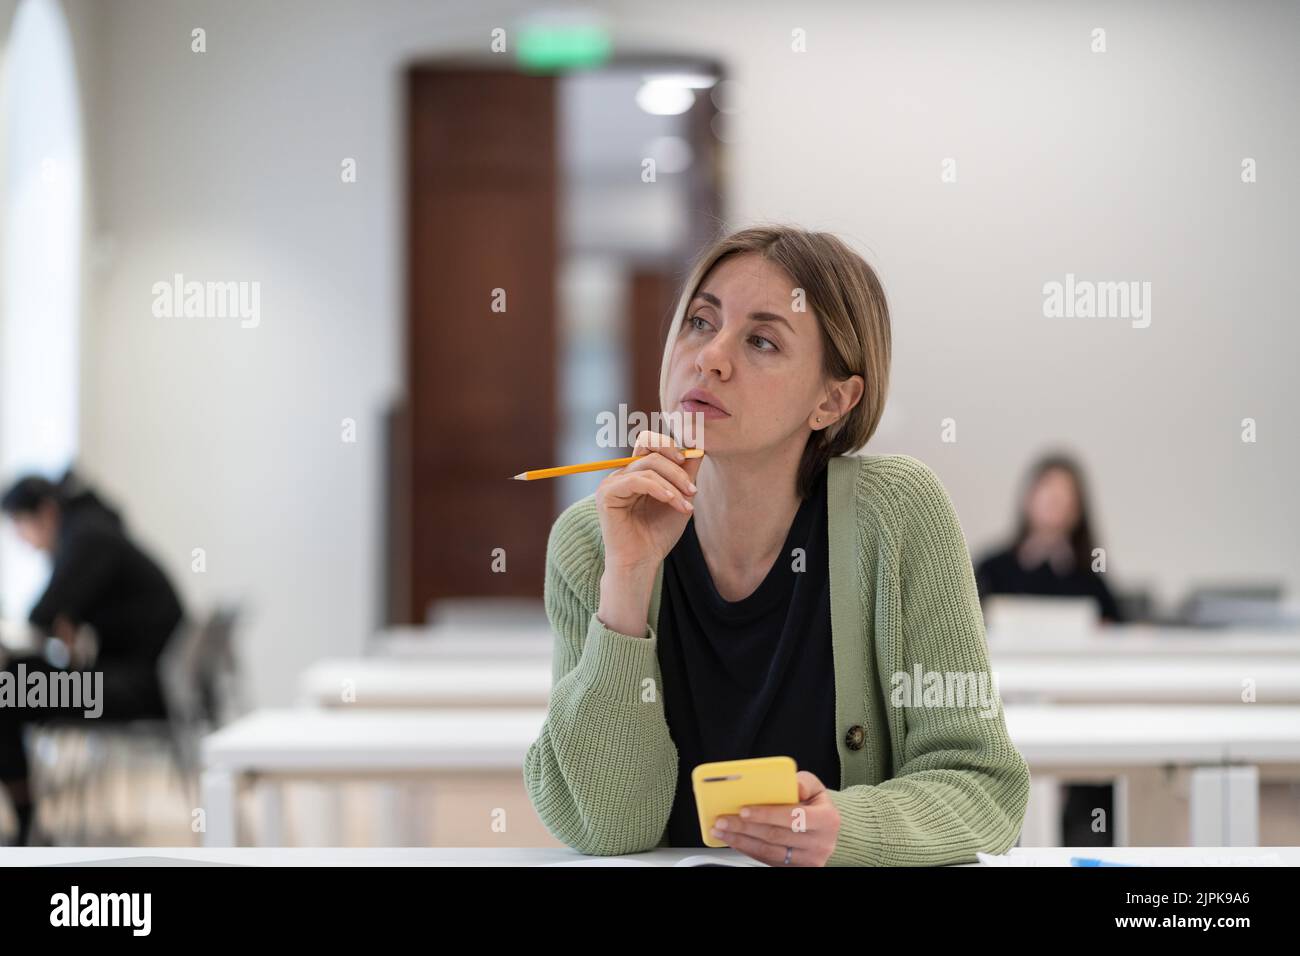 Nachdenkliche Frau reifer Student Blick in die Ferne während des Studiums in der Bibliothek, desinteressiert an Studie Stockfoto